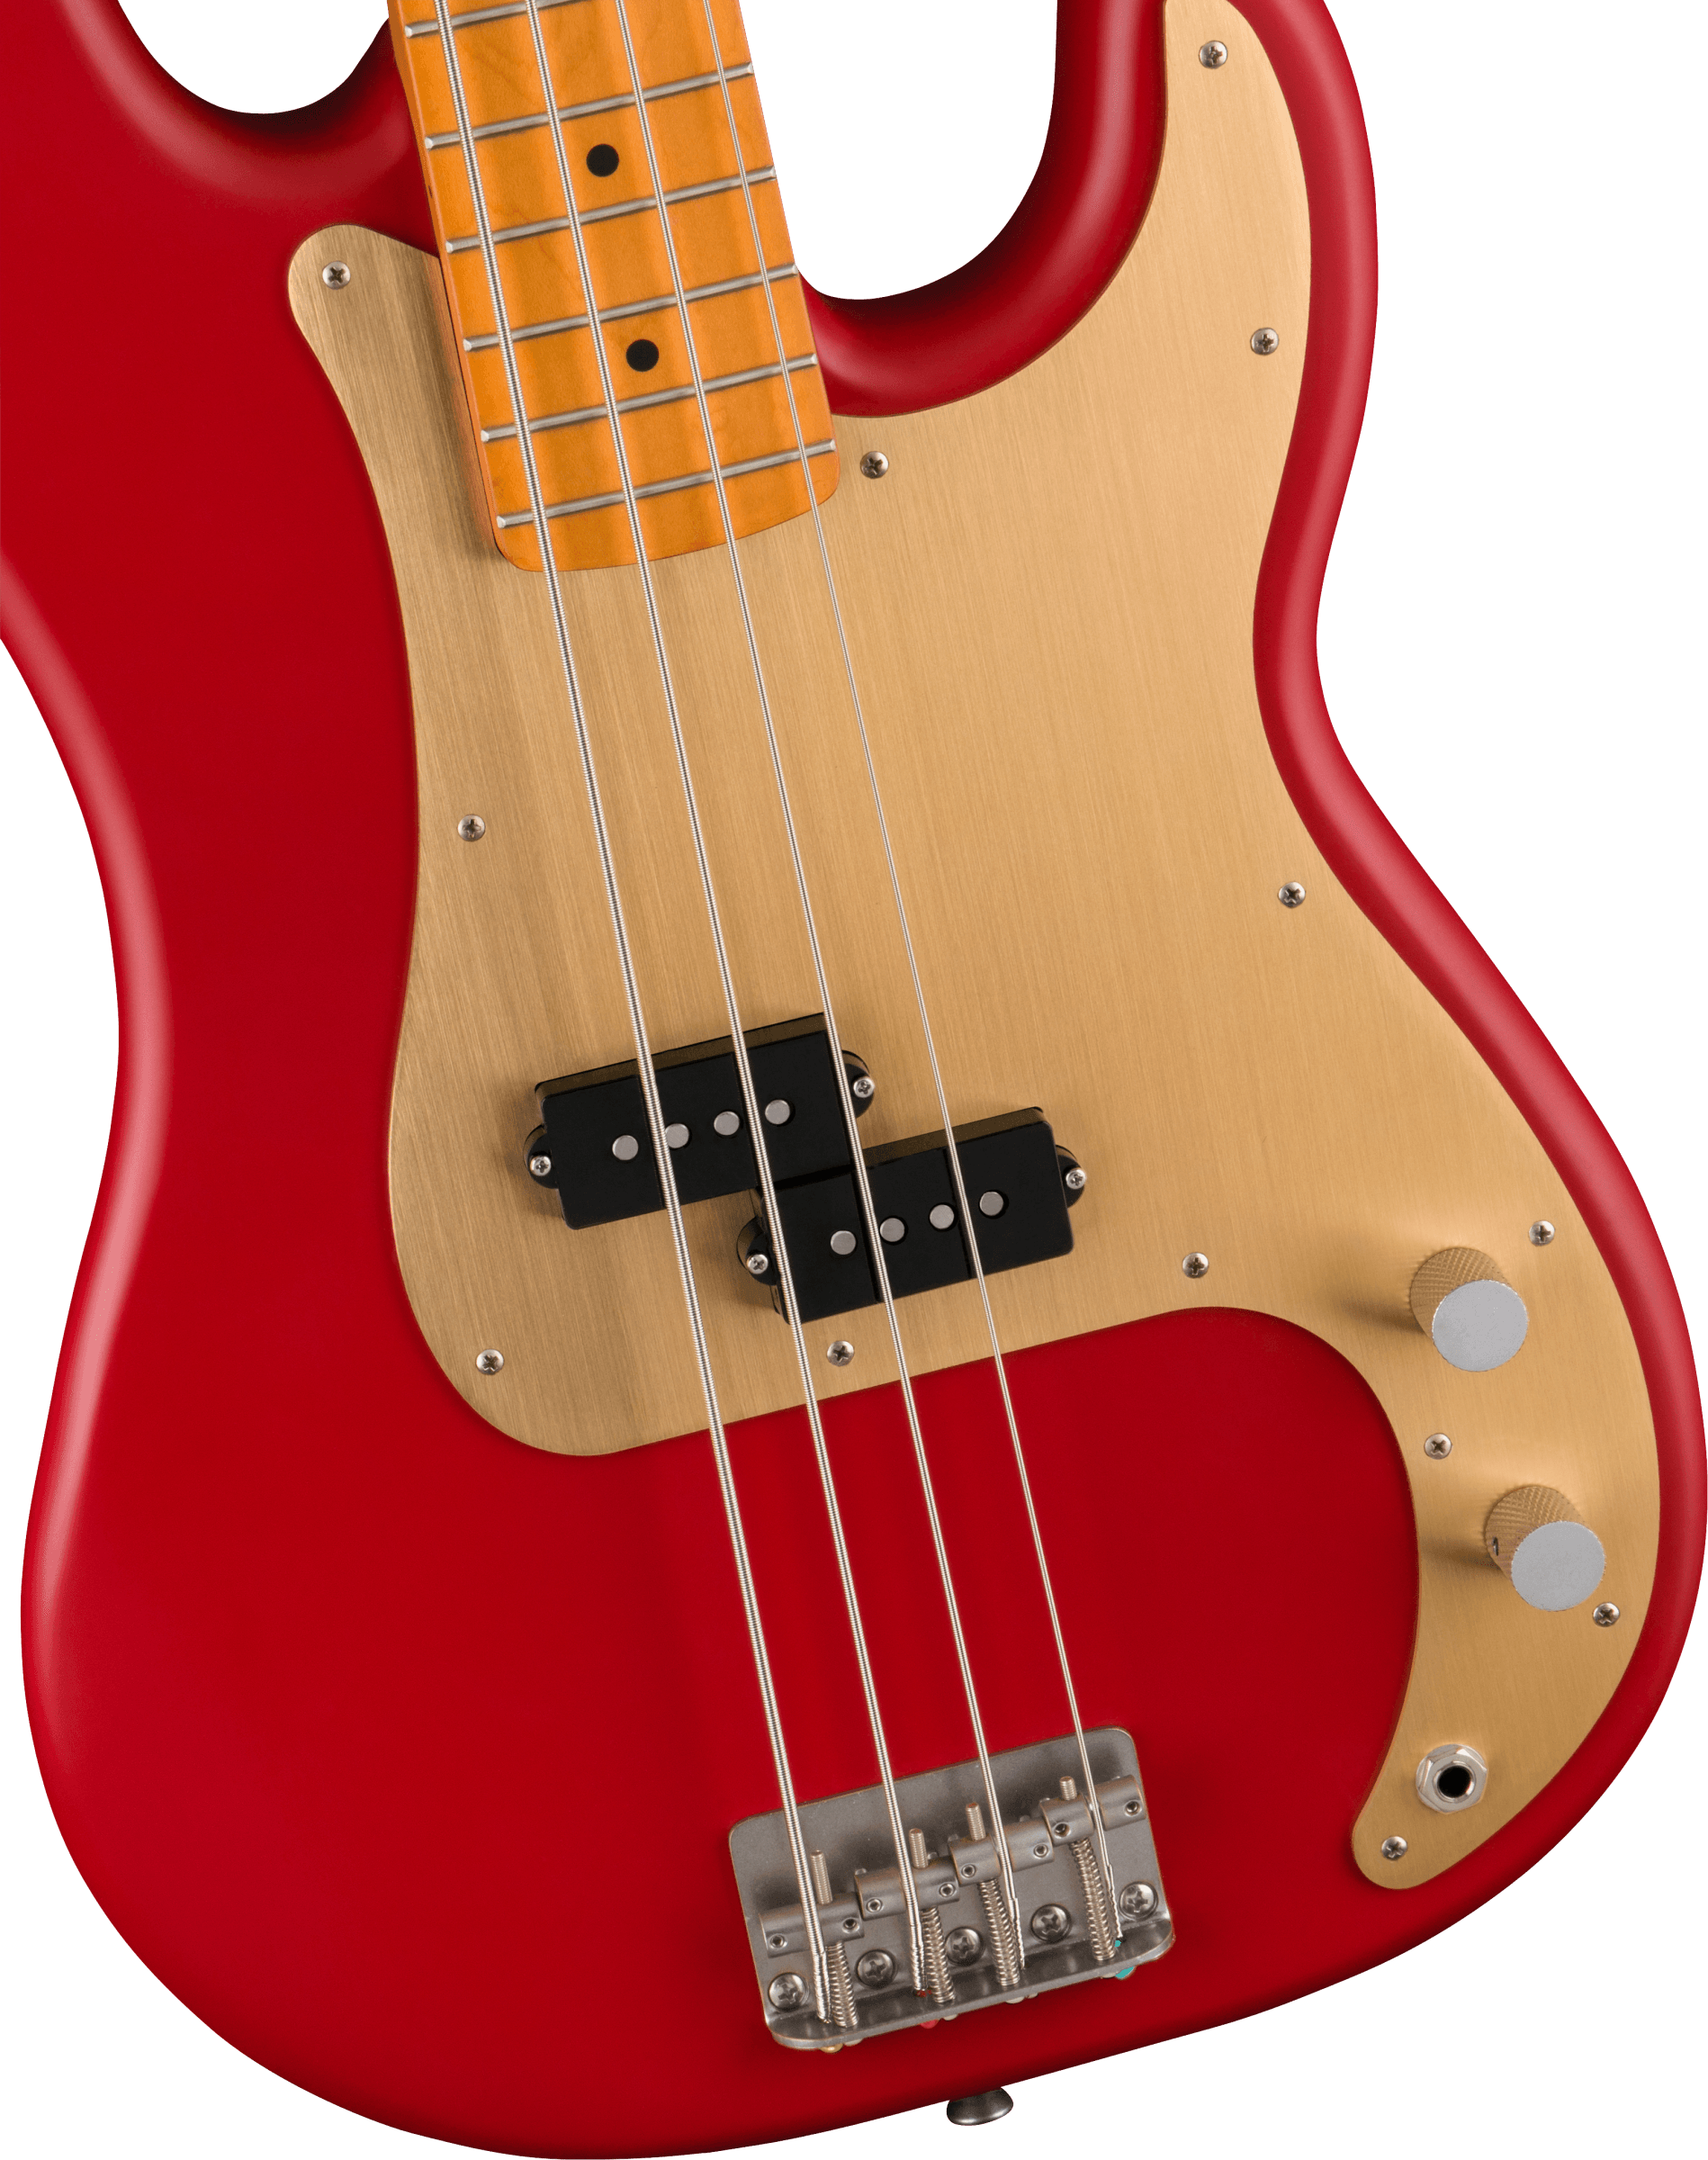 Squier Precision Bass 40th Anniversary Gold Edition Mn - Satin Dakota Red - Bajo eléctrico de cuerpo sólido - Variation 2